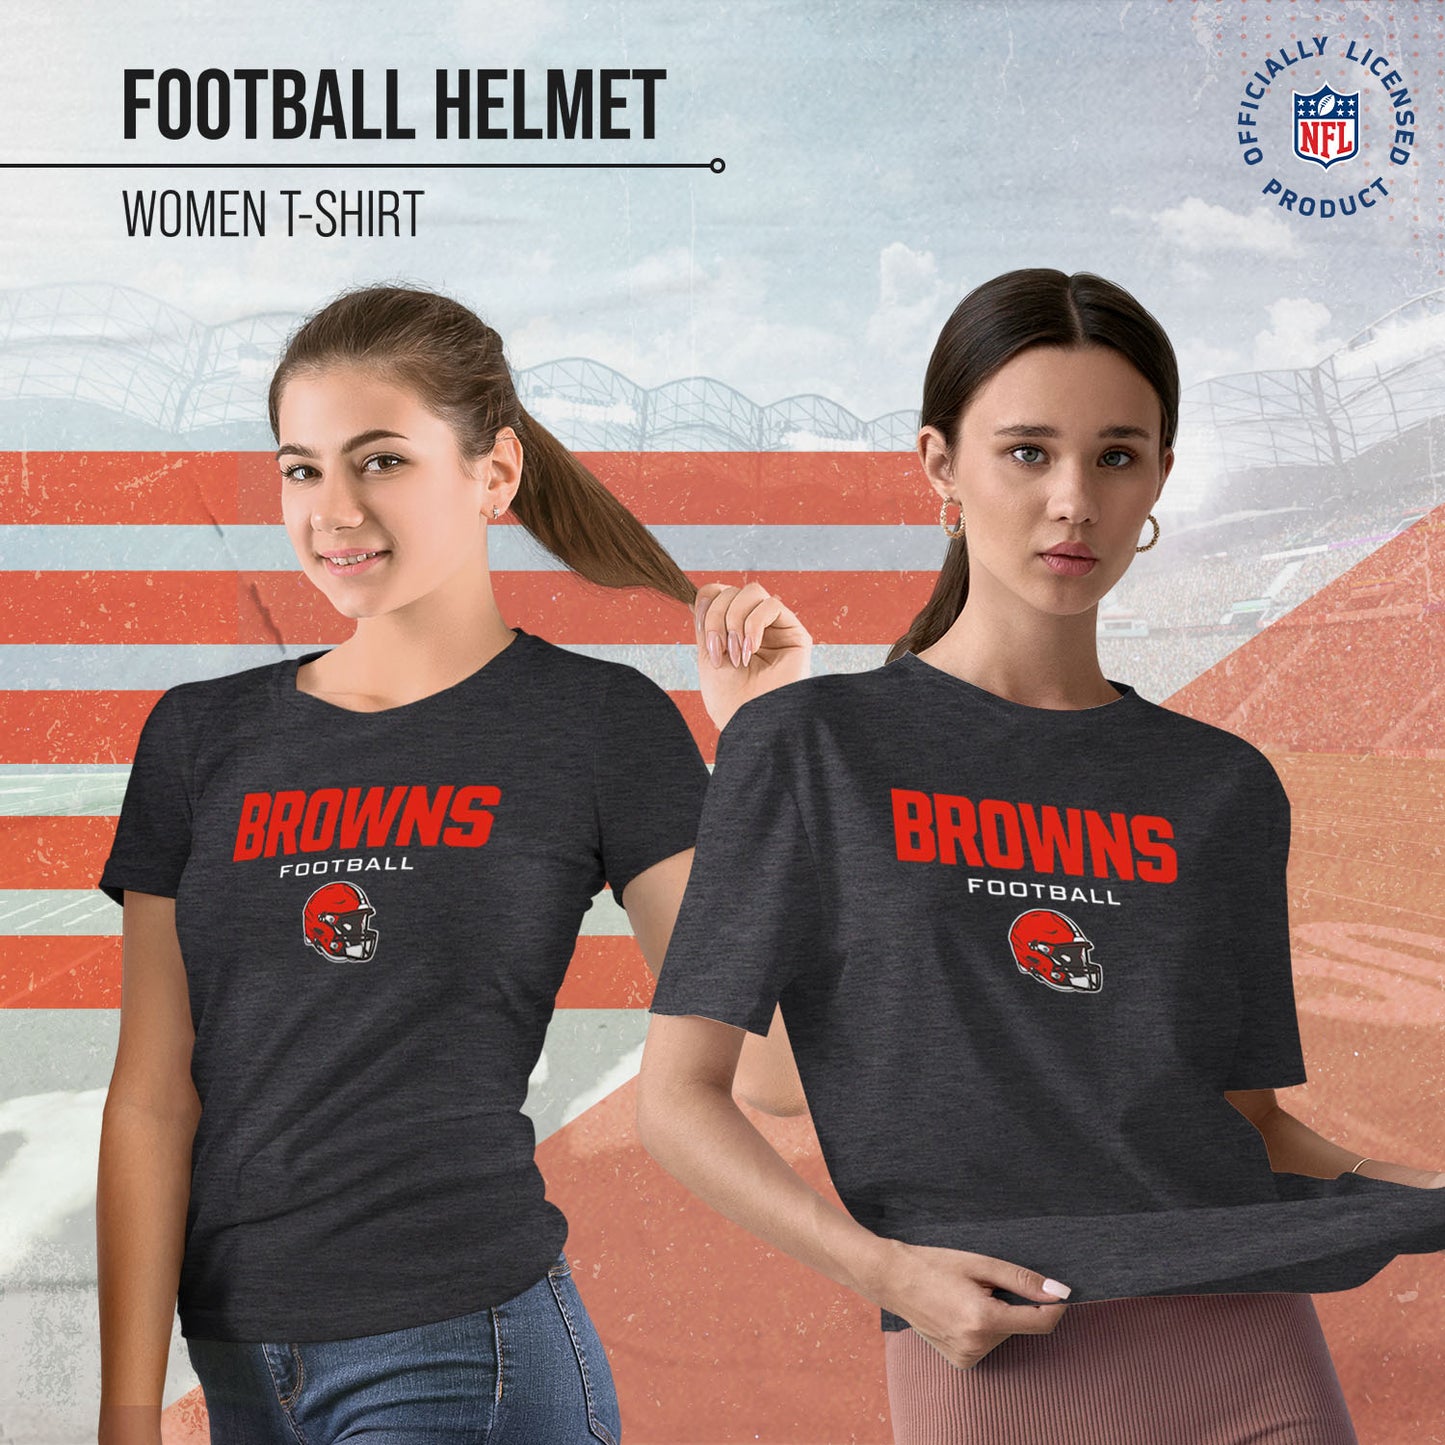 Cleveland Browns Women's NFL Football Helmet Short Sleeve Tagless T-Shirt - Charcoal